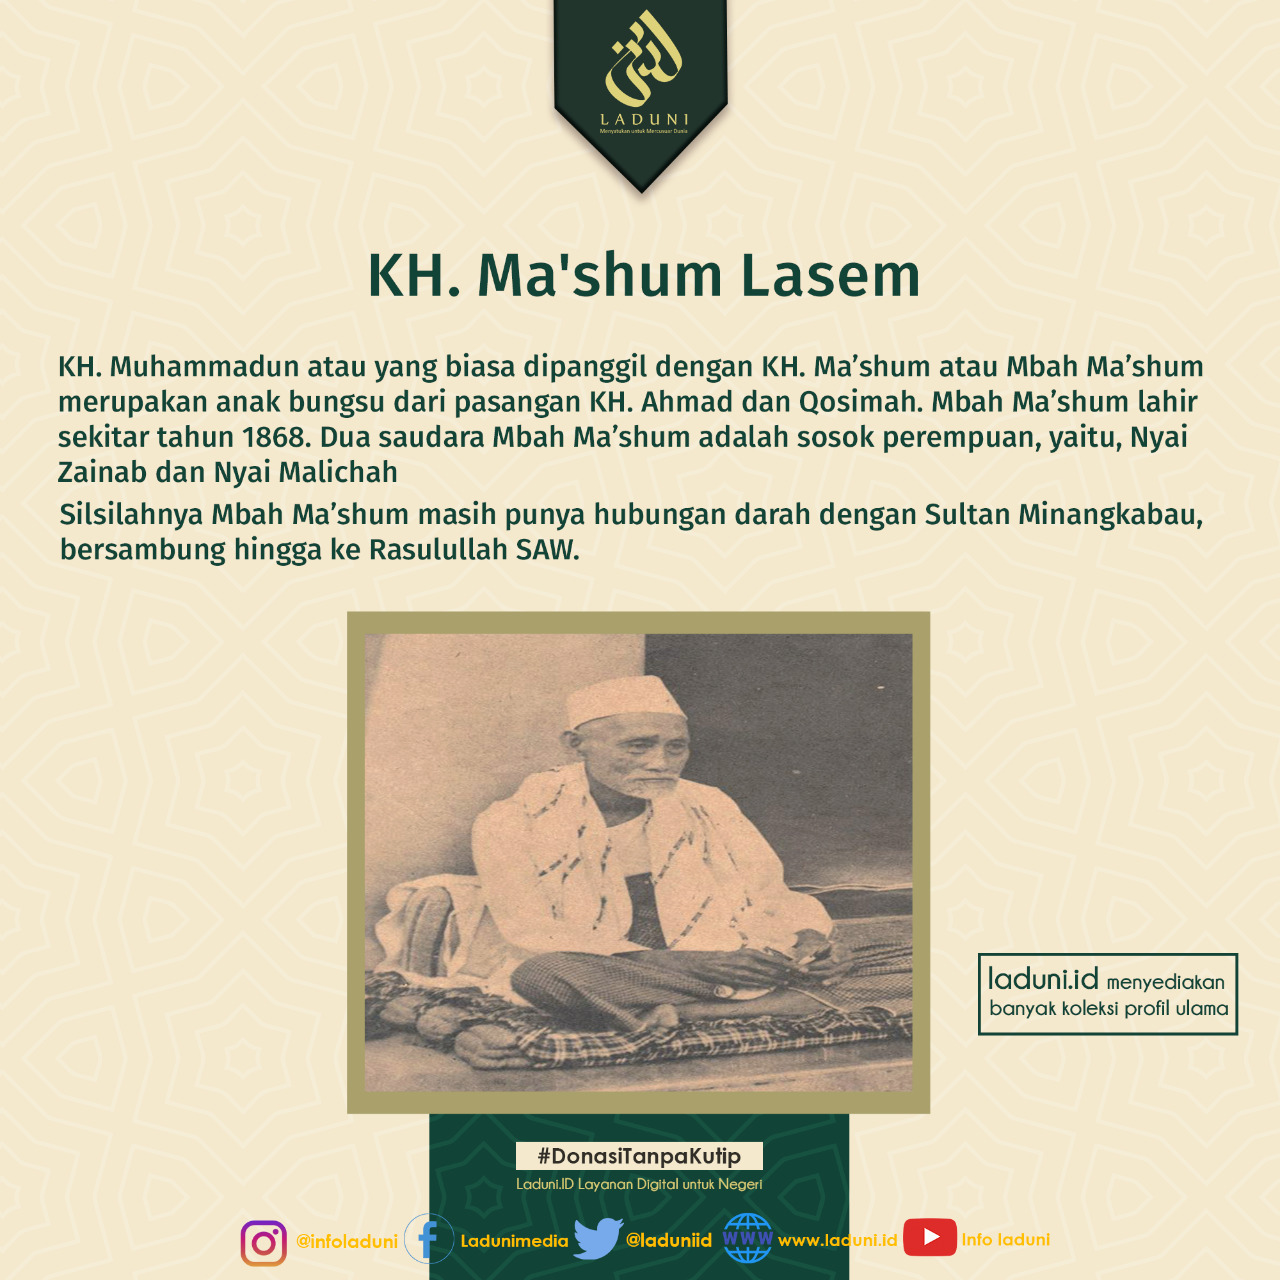 Biografi KH. Ma'shum Lasem